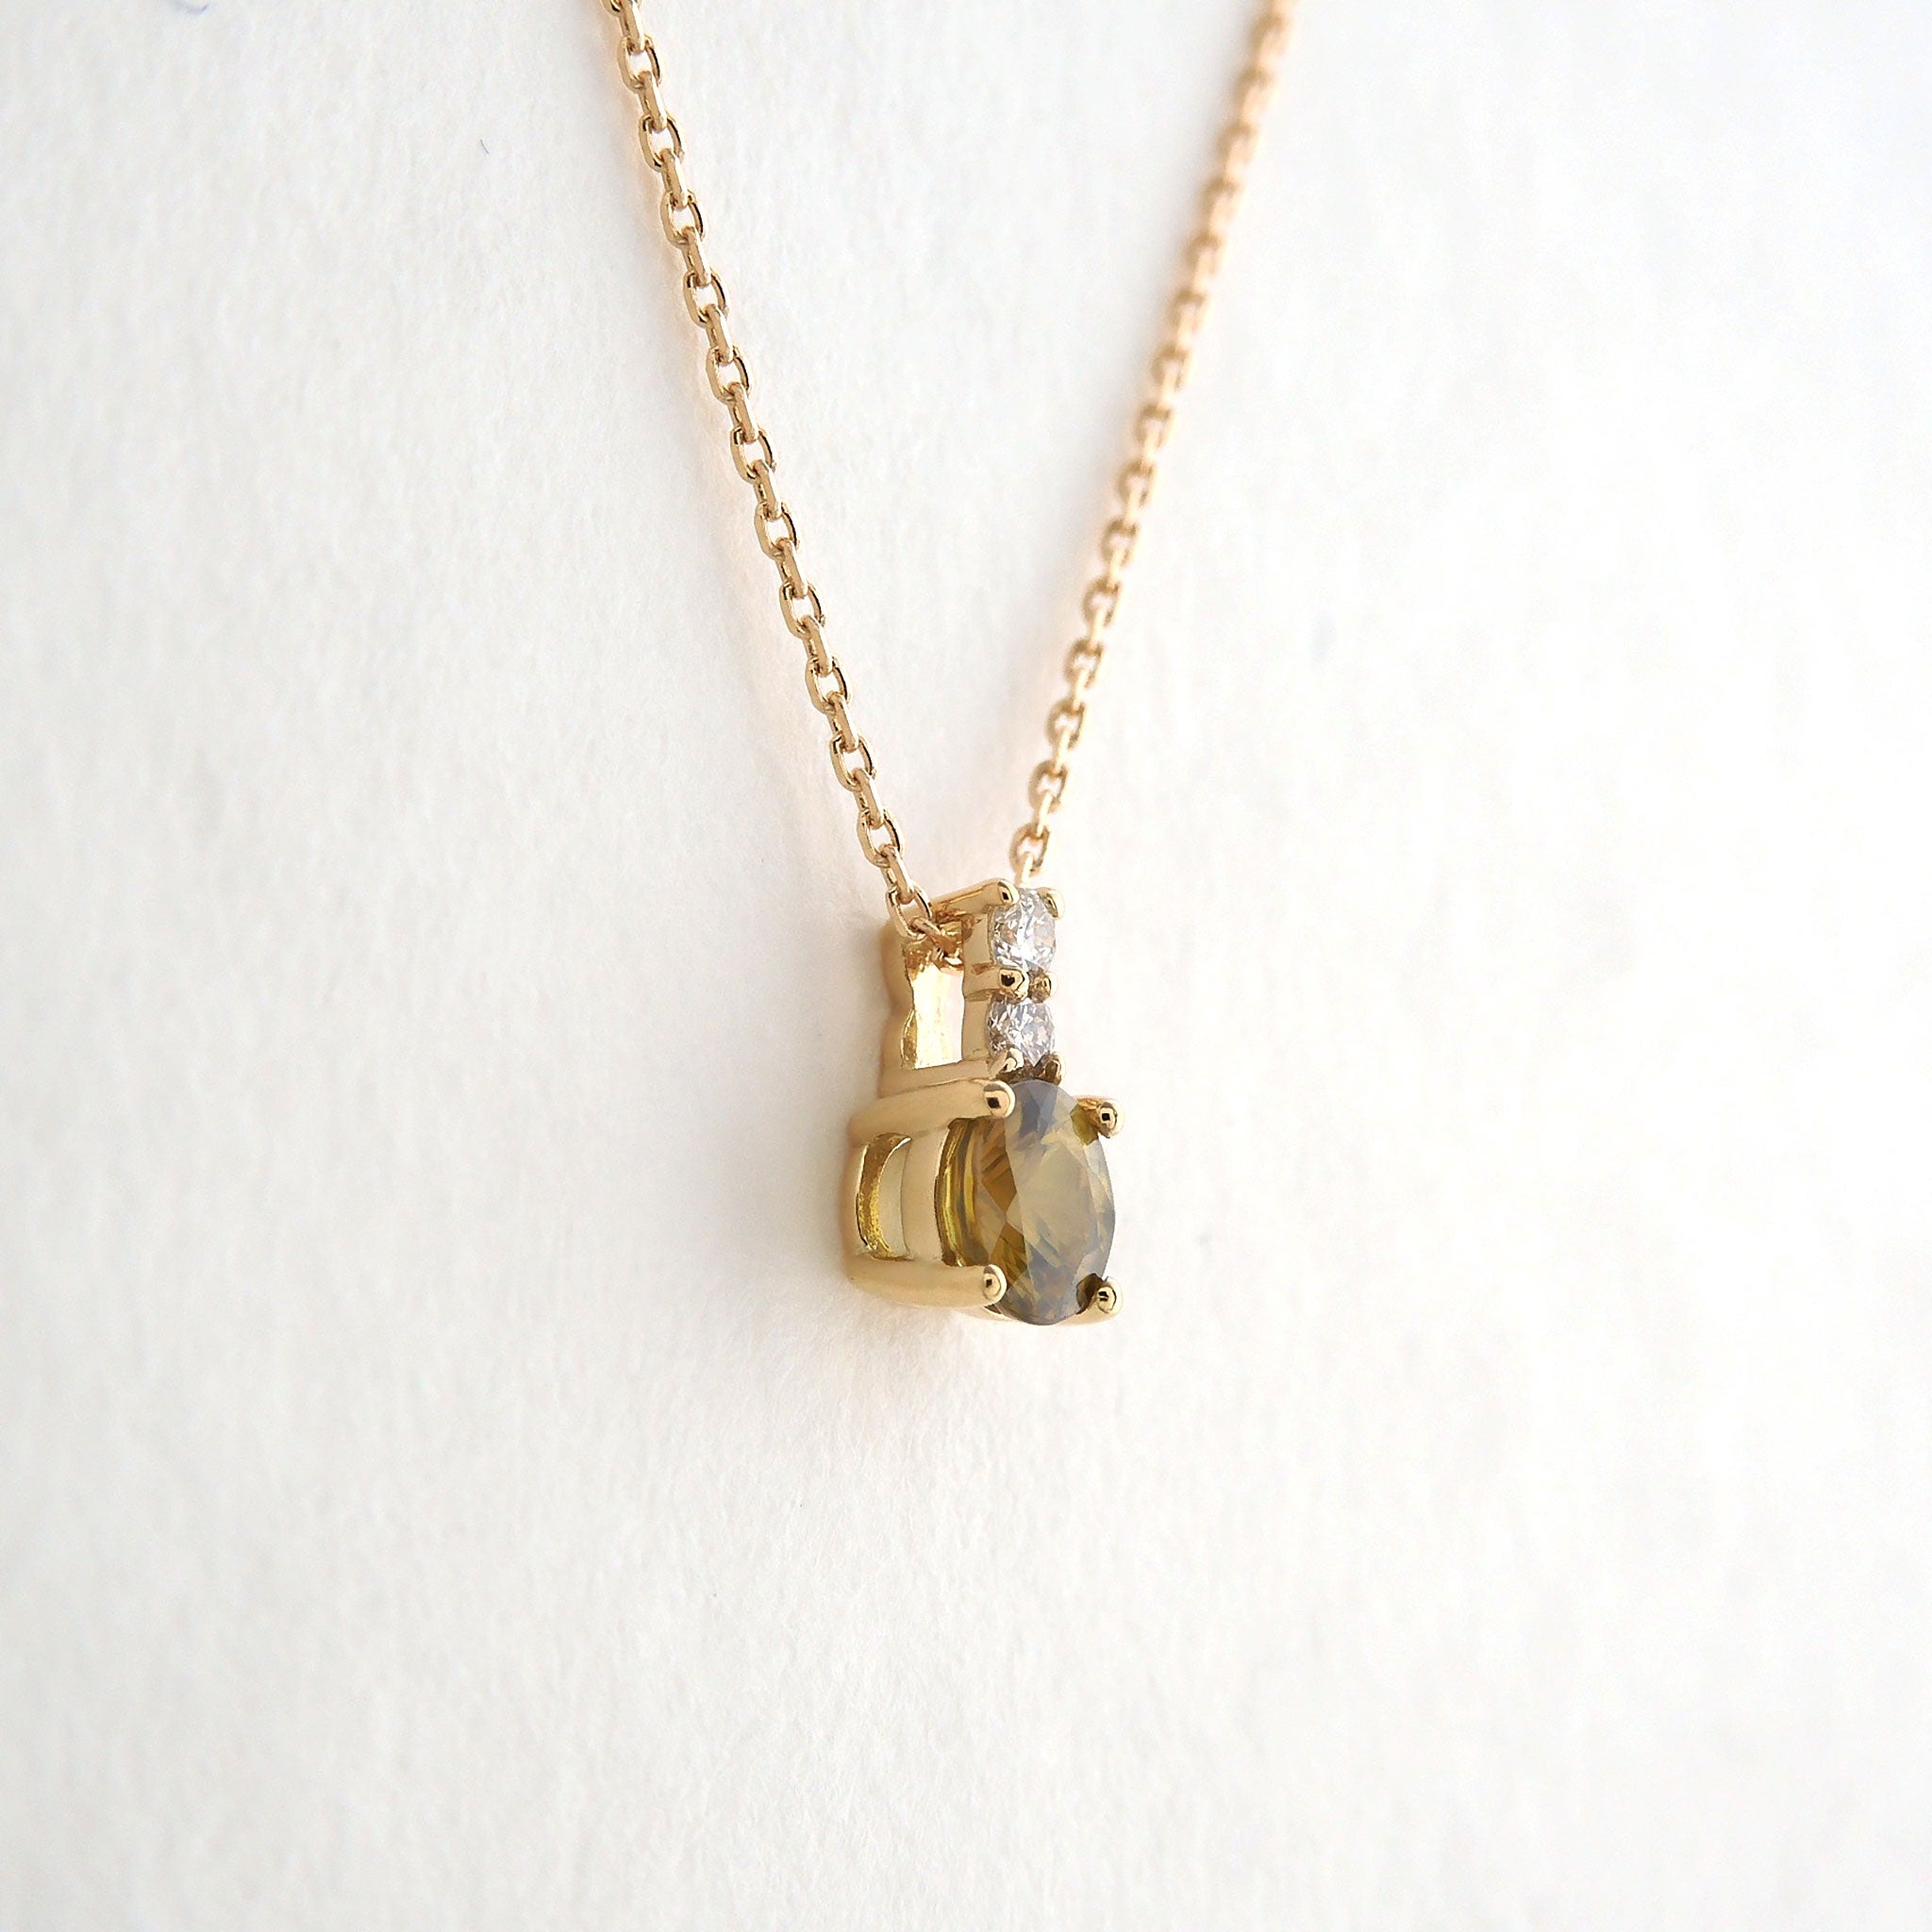 スフェーン/ダイヤモンド K18ネックレス(7月誕生石)《24H00301》 | 京セラジュエリー オンラインストア